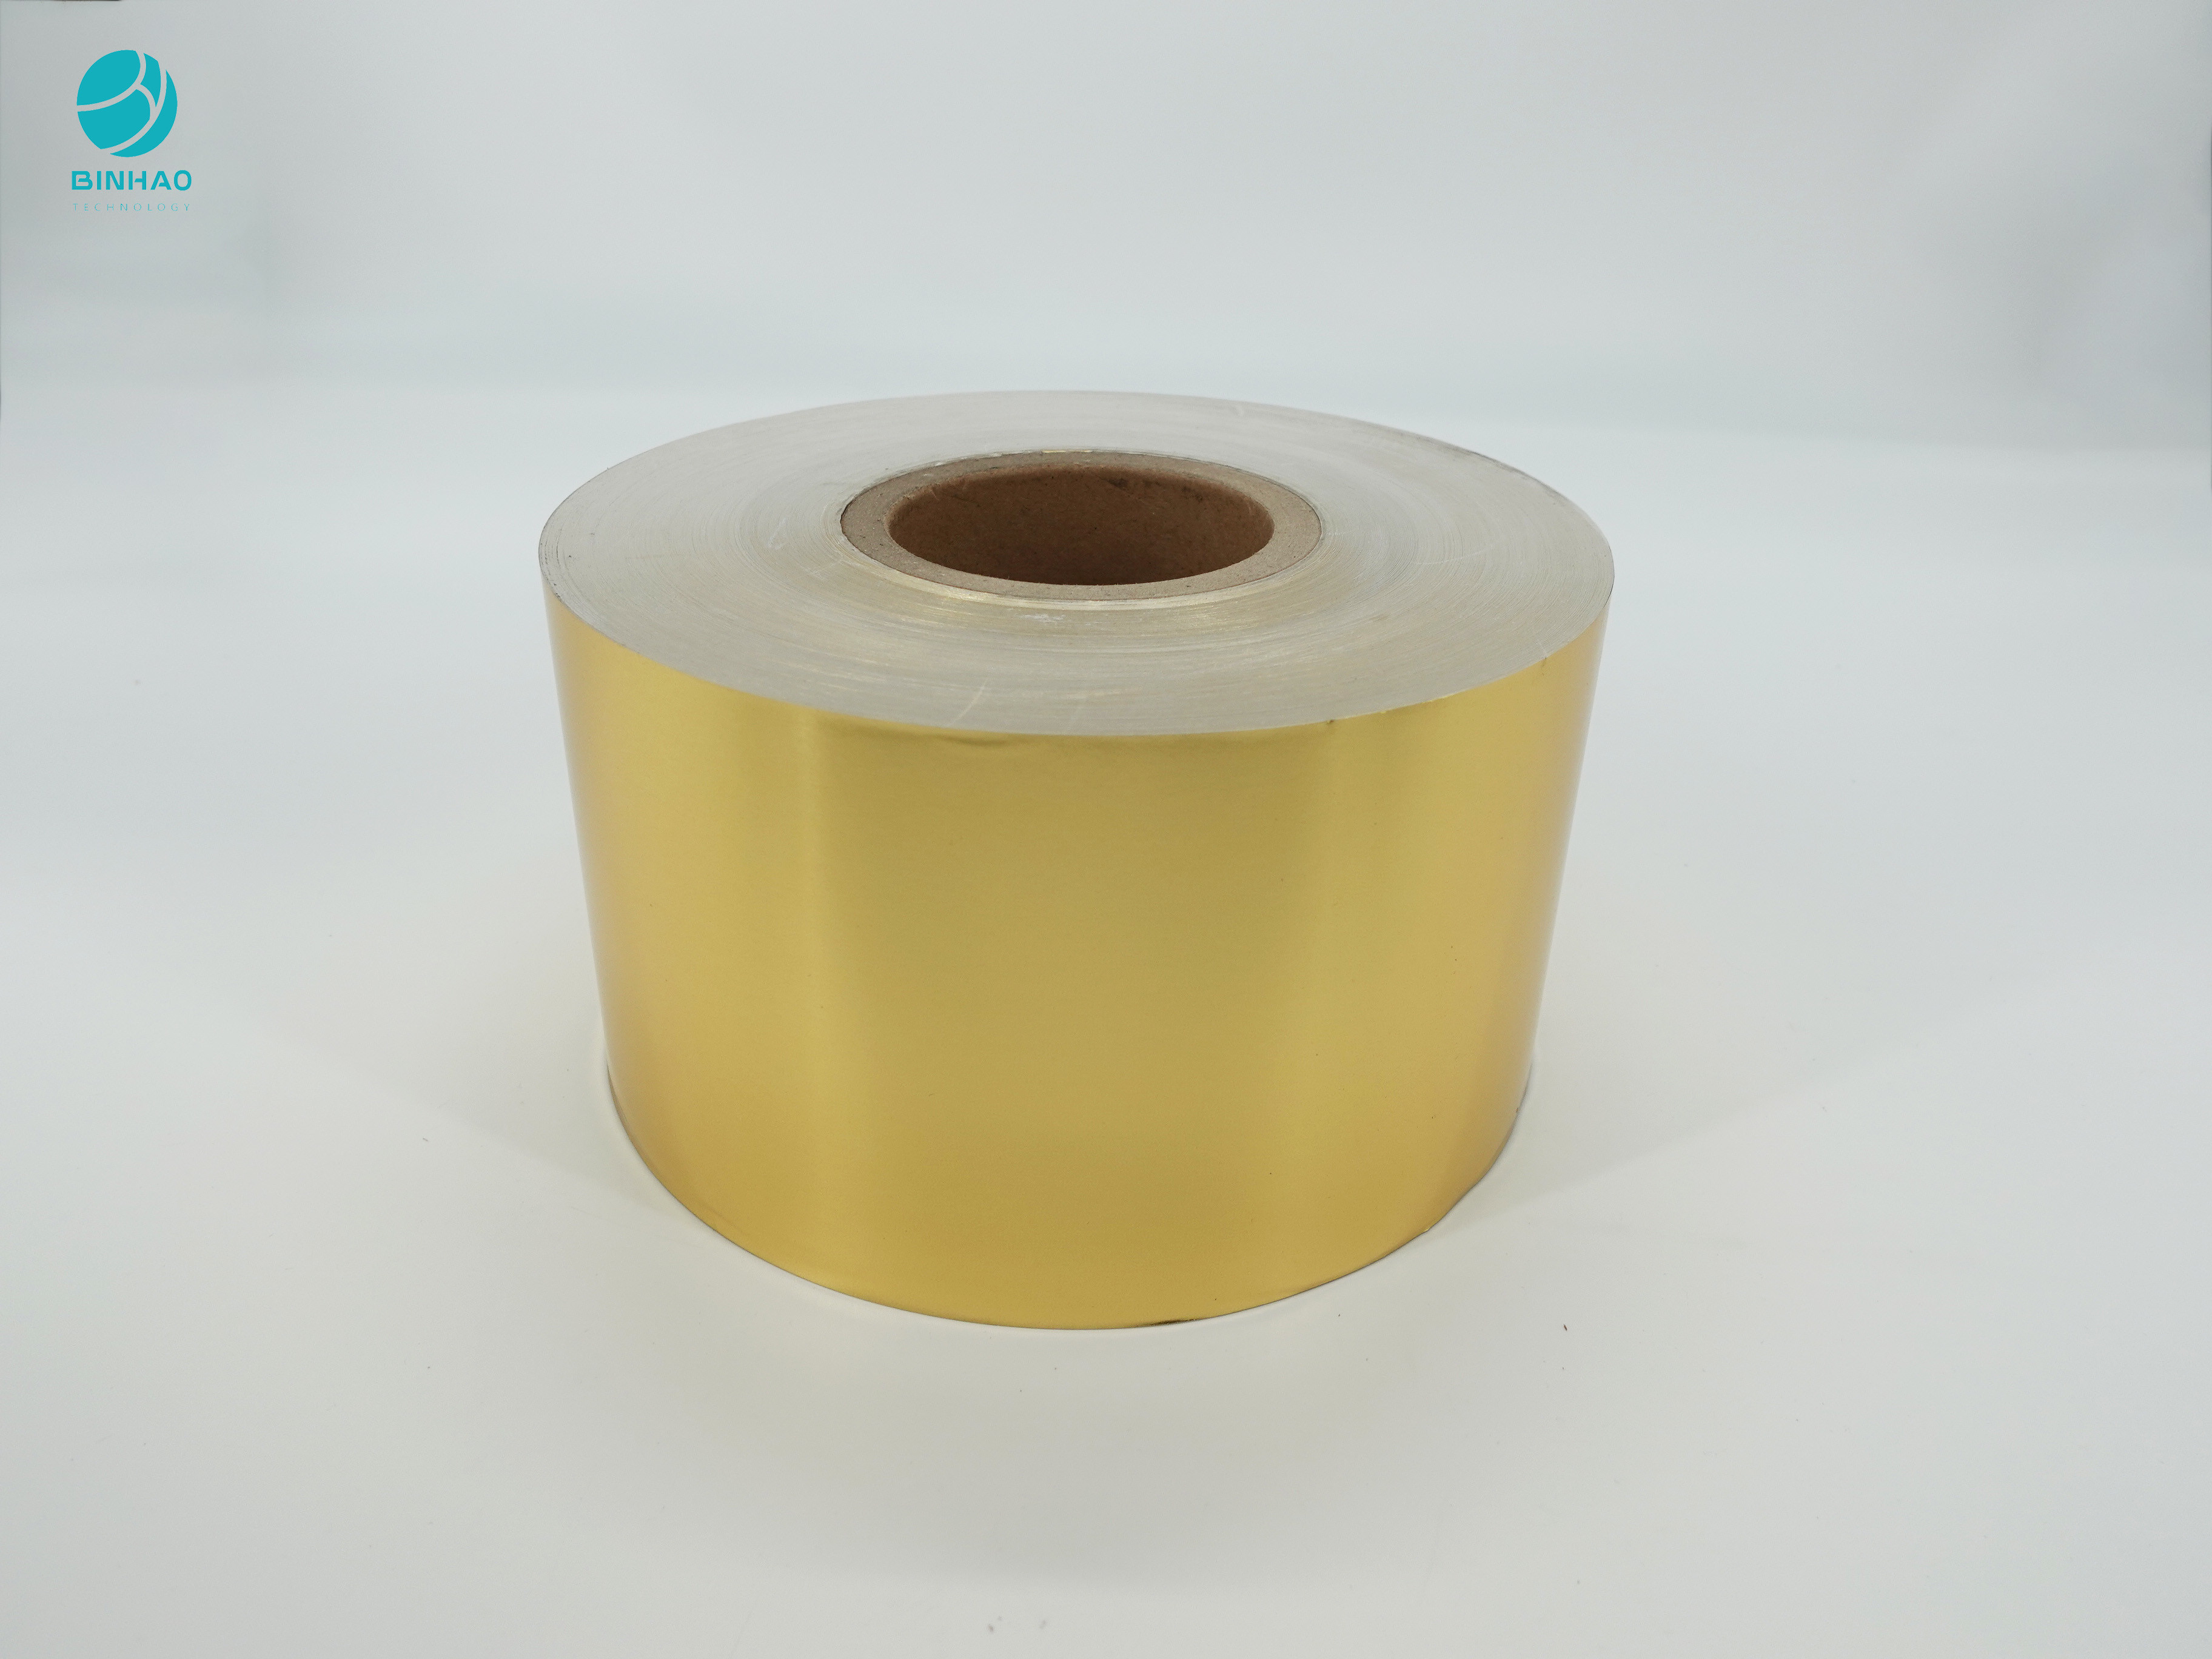 กระดาษฟอยล์อลูมิเนียมคอมโพสิตสีทอง 8011 สำหรับบรรจุภัณฑ์ภายในบุหรี่